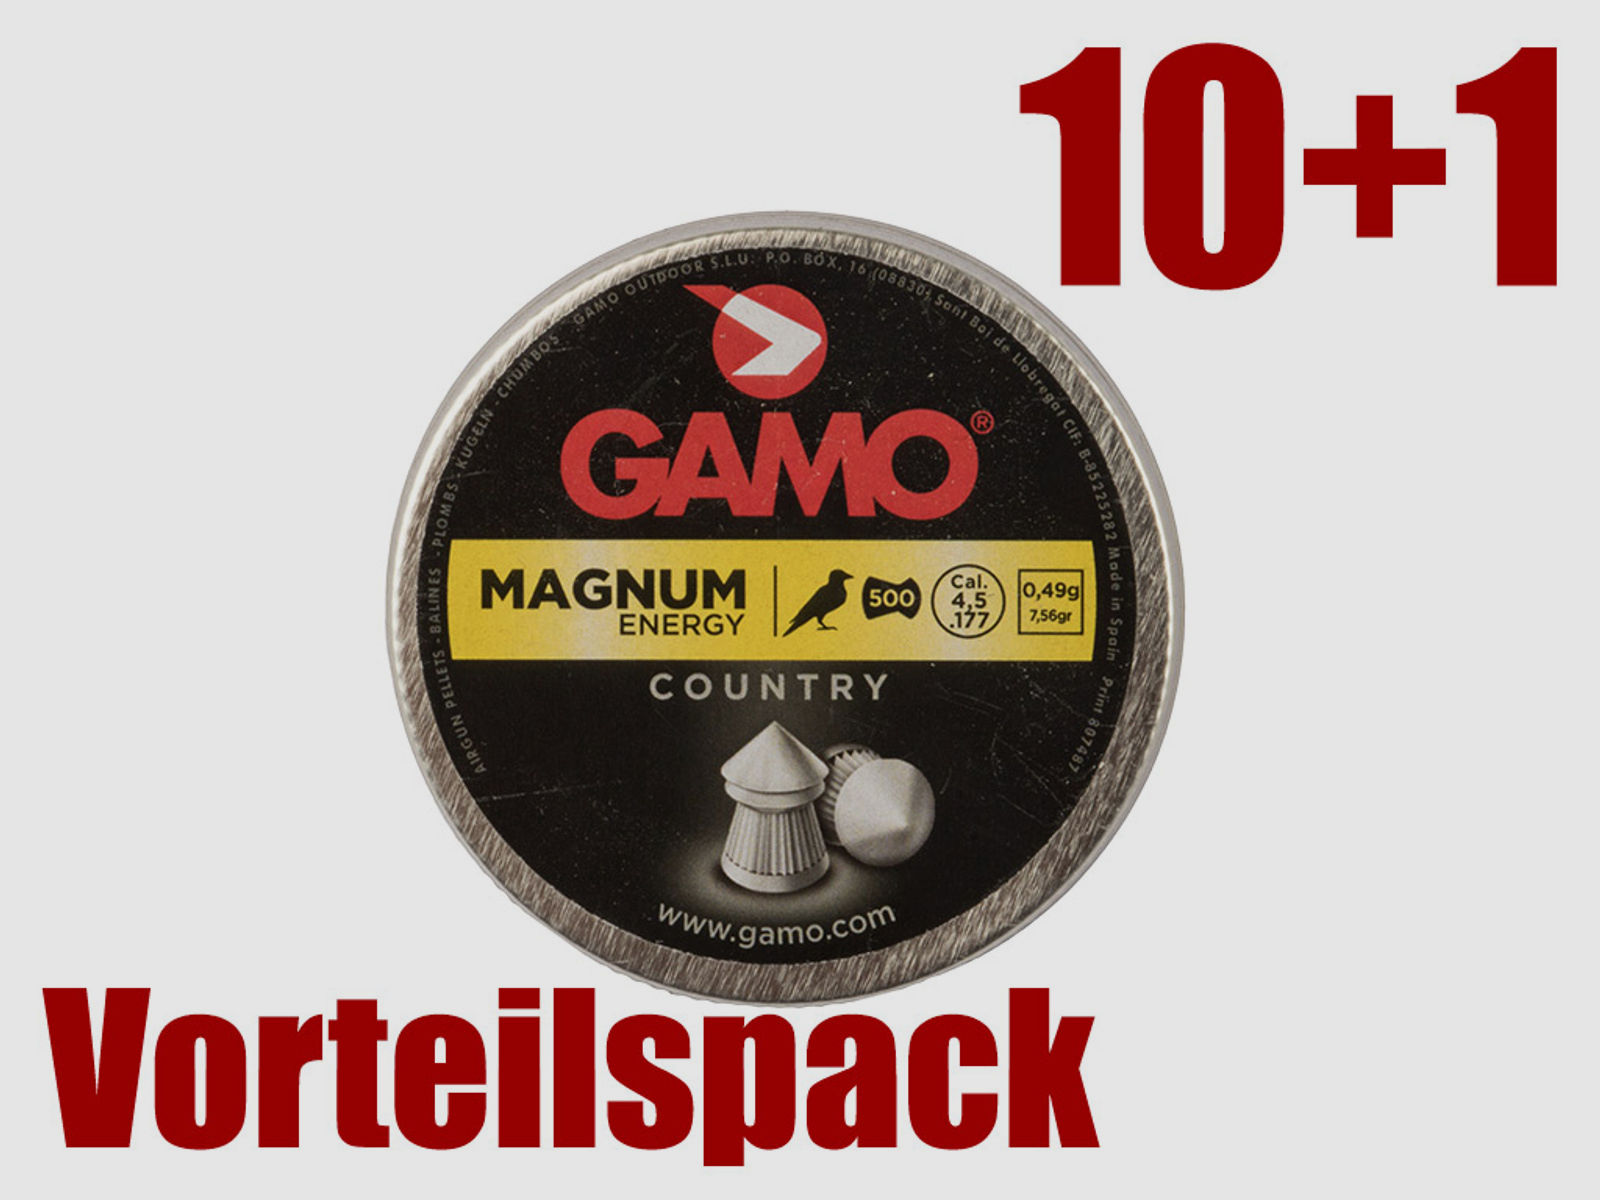 Vorteilspack 10+1 Spitzkopf Diabolos Gamo Country Magnum Kaliber 4,5 mm 0,49 g geriffelt 11 x 500 StĂĽck